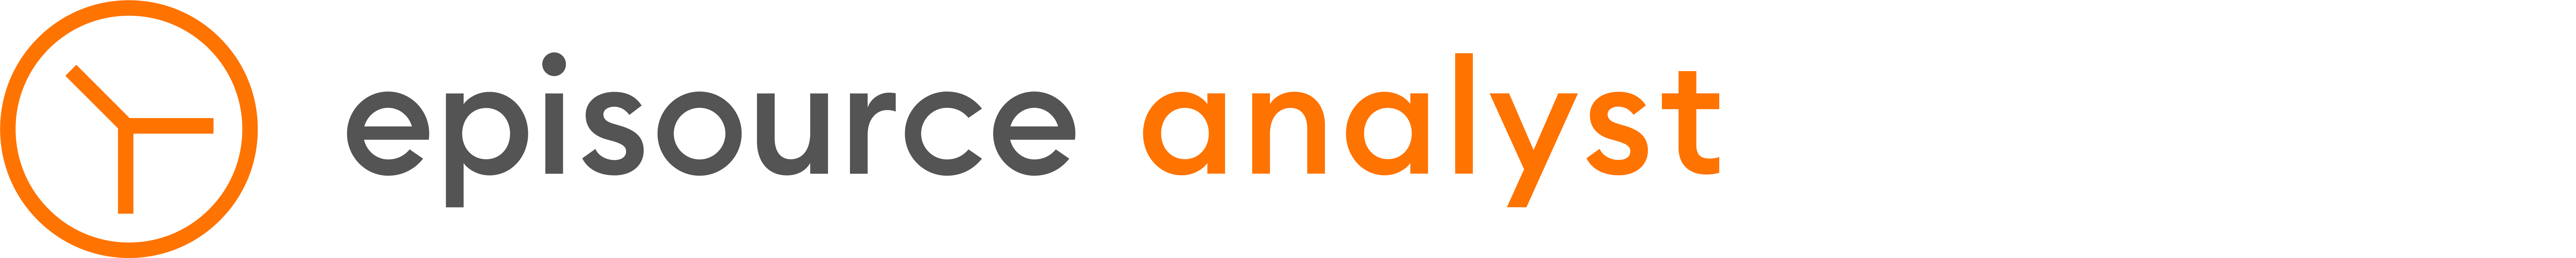 Episource Analyst logo